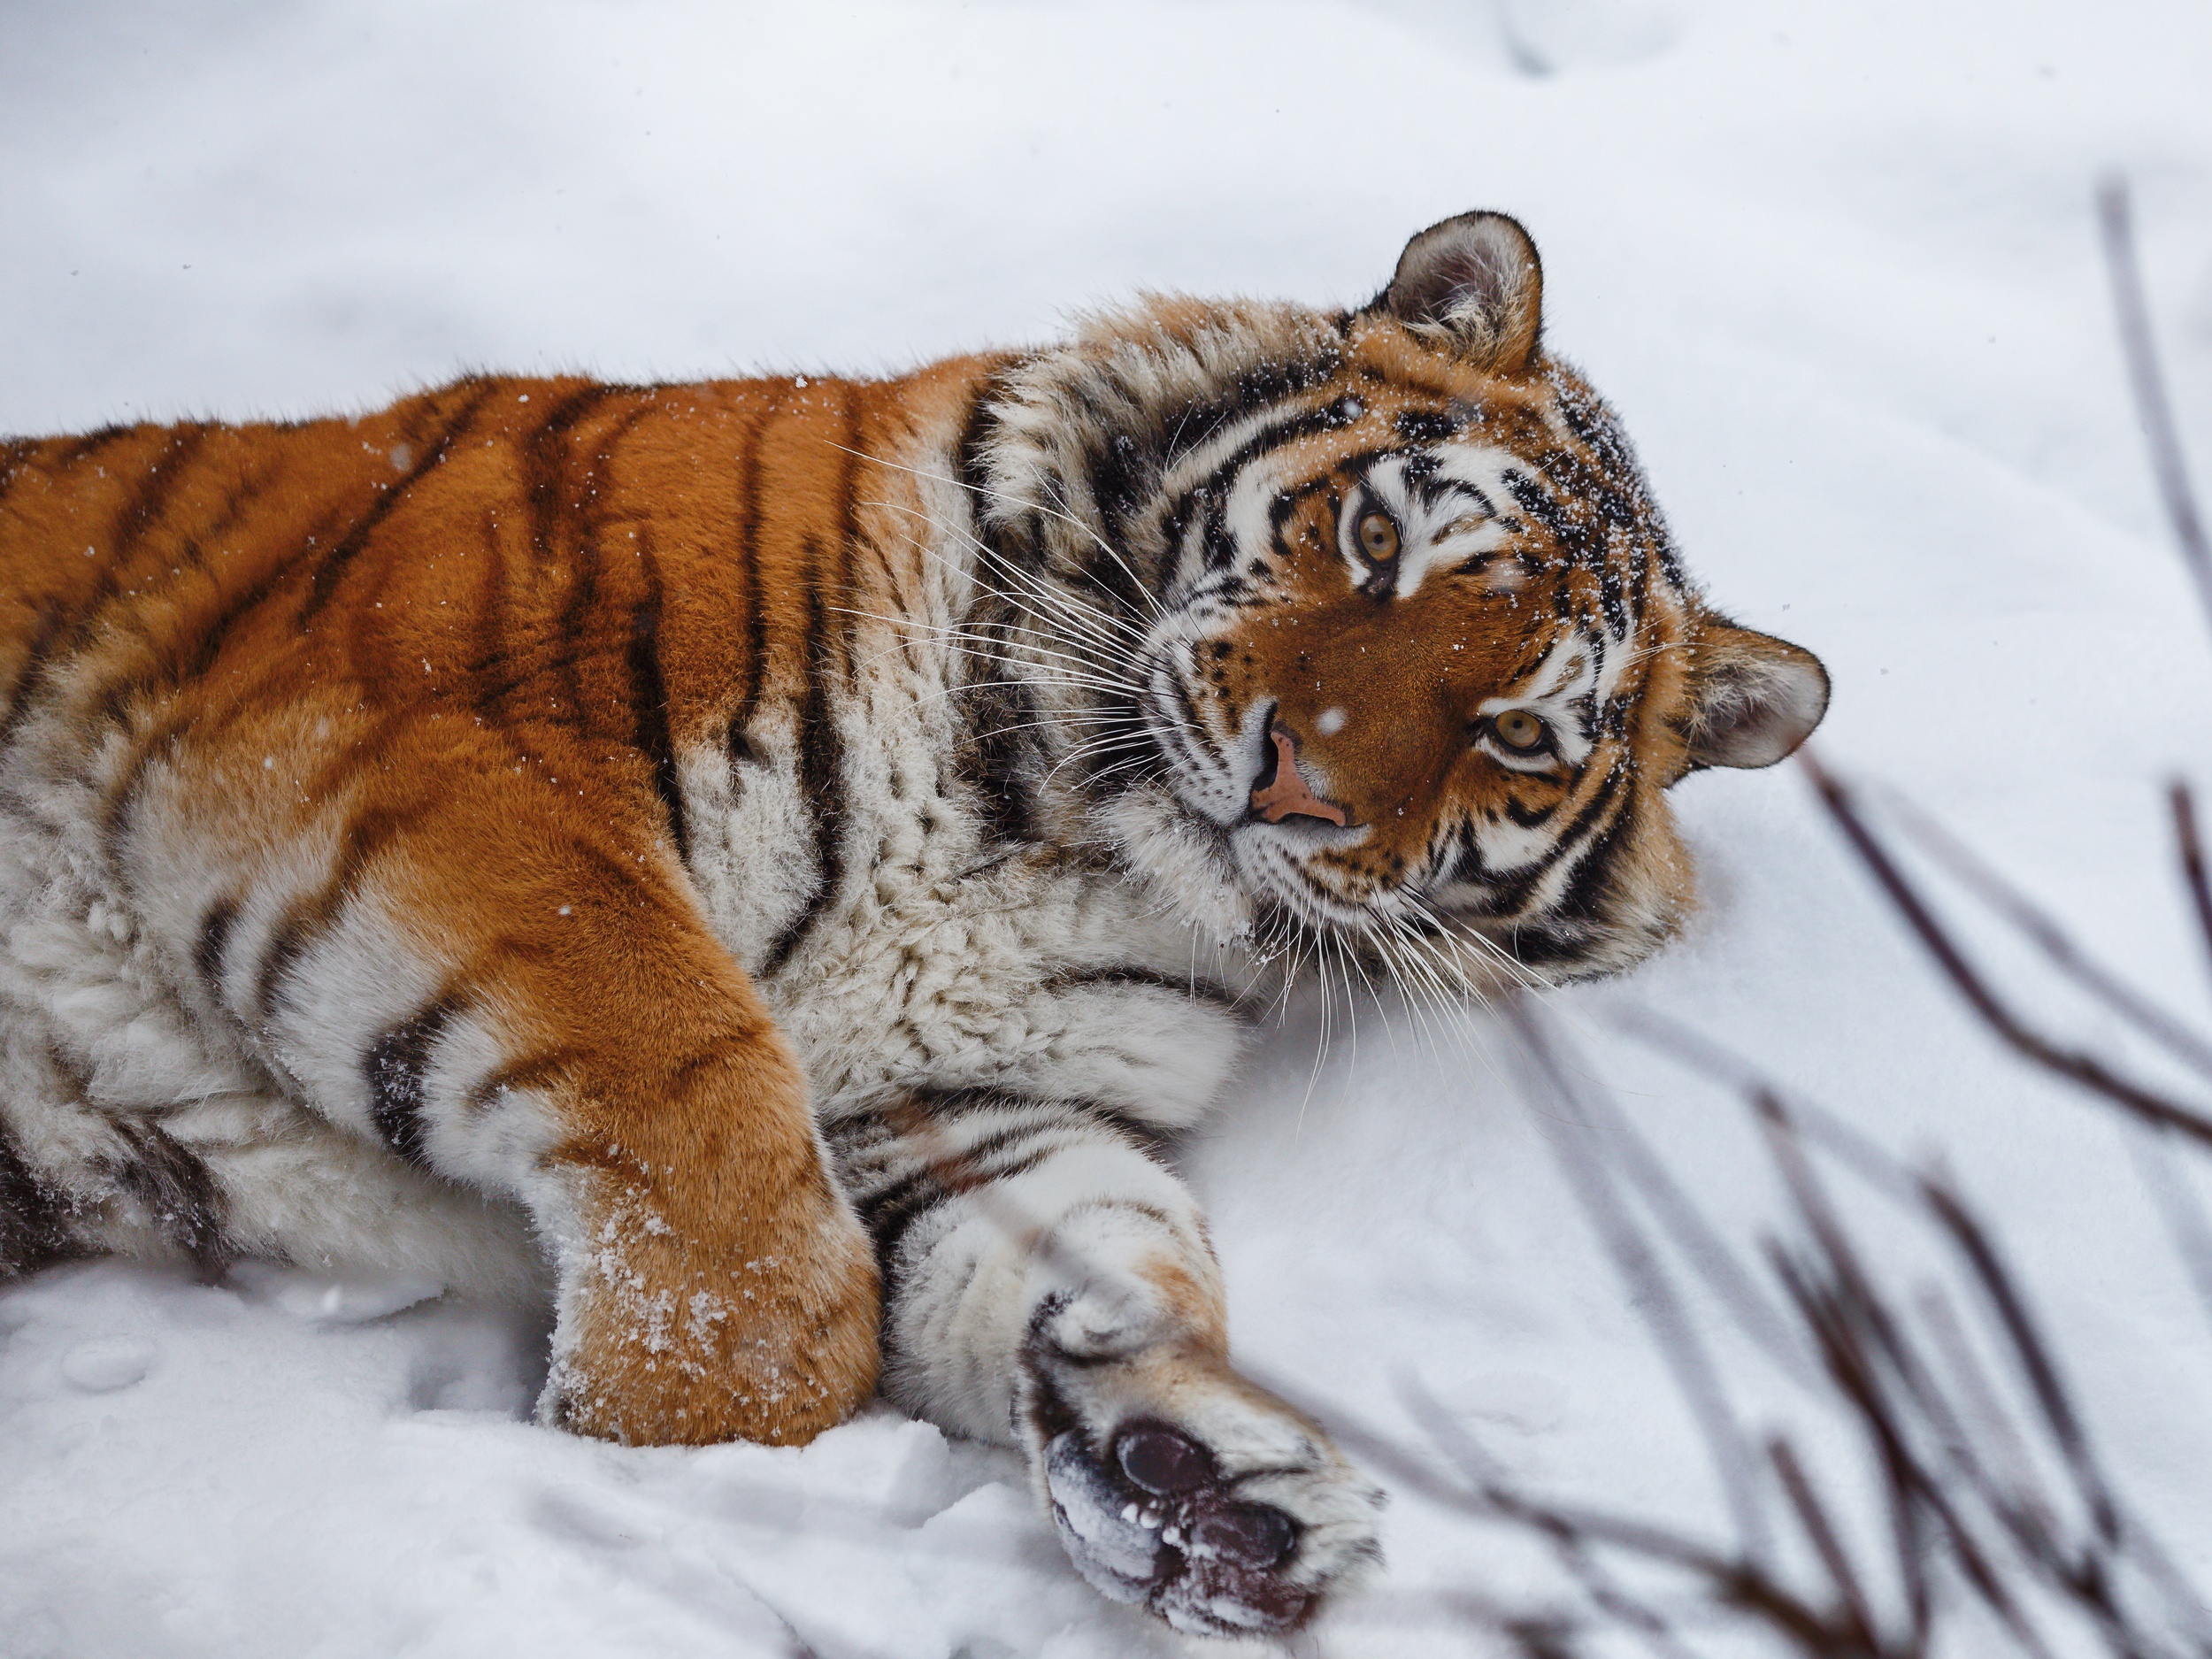 Скачать обои бесплатно Животные, Снег, Тигр, Кошки картинка на рабочий стол ПК